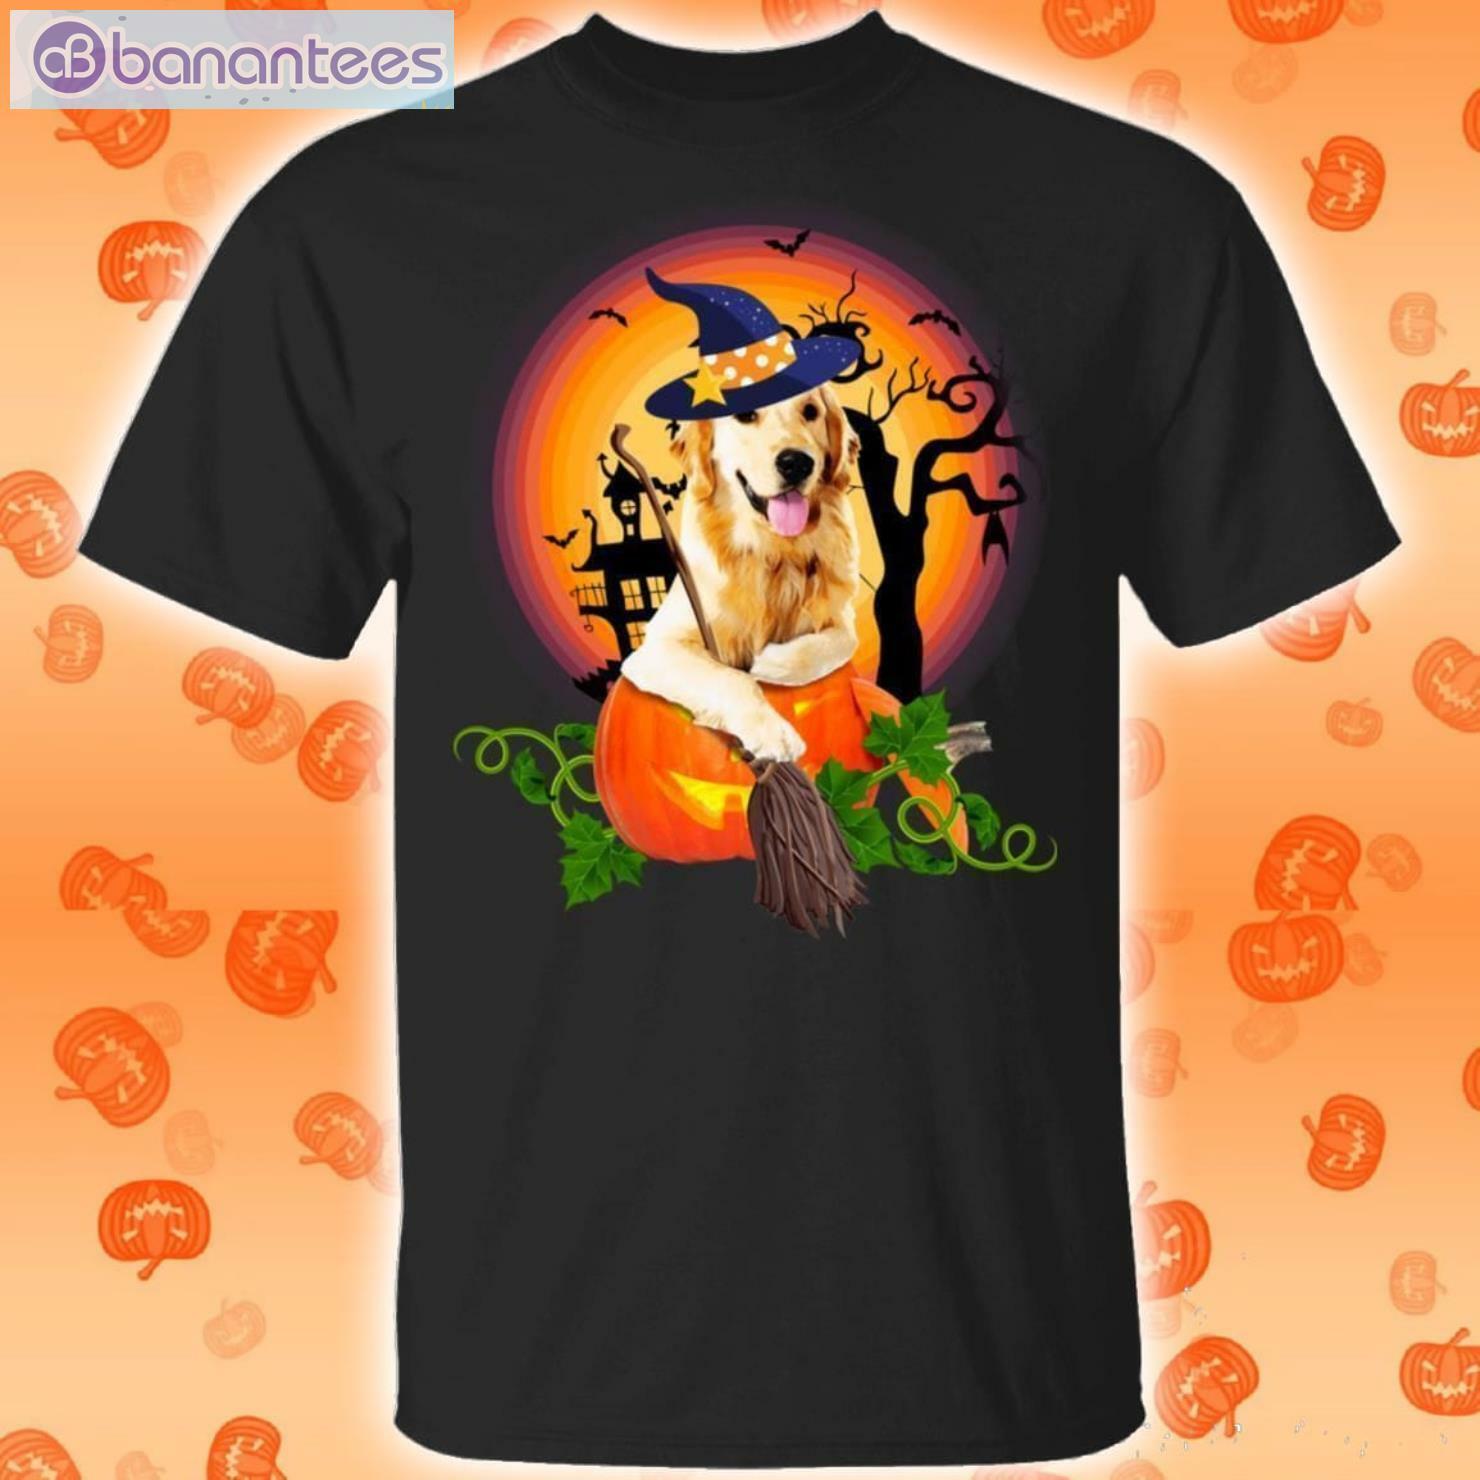 Golden Retriever In The Pumpkin Halloween T-Shirt Product Photo 1